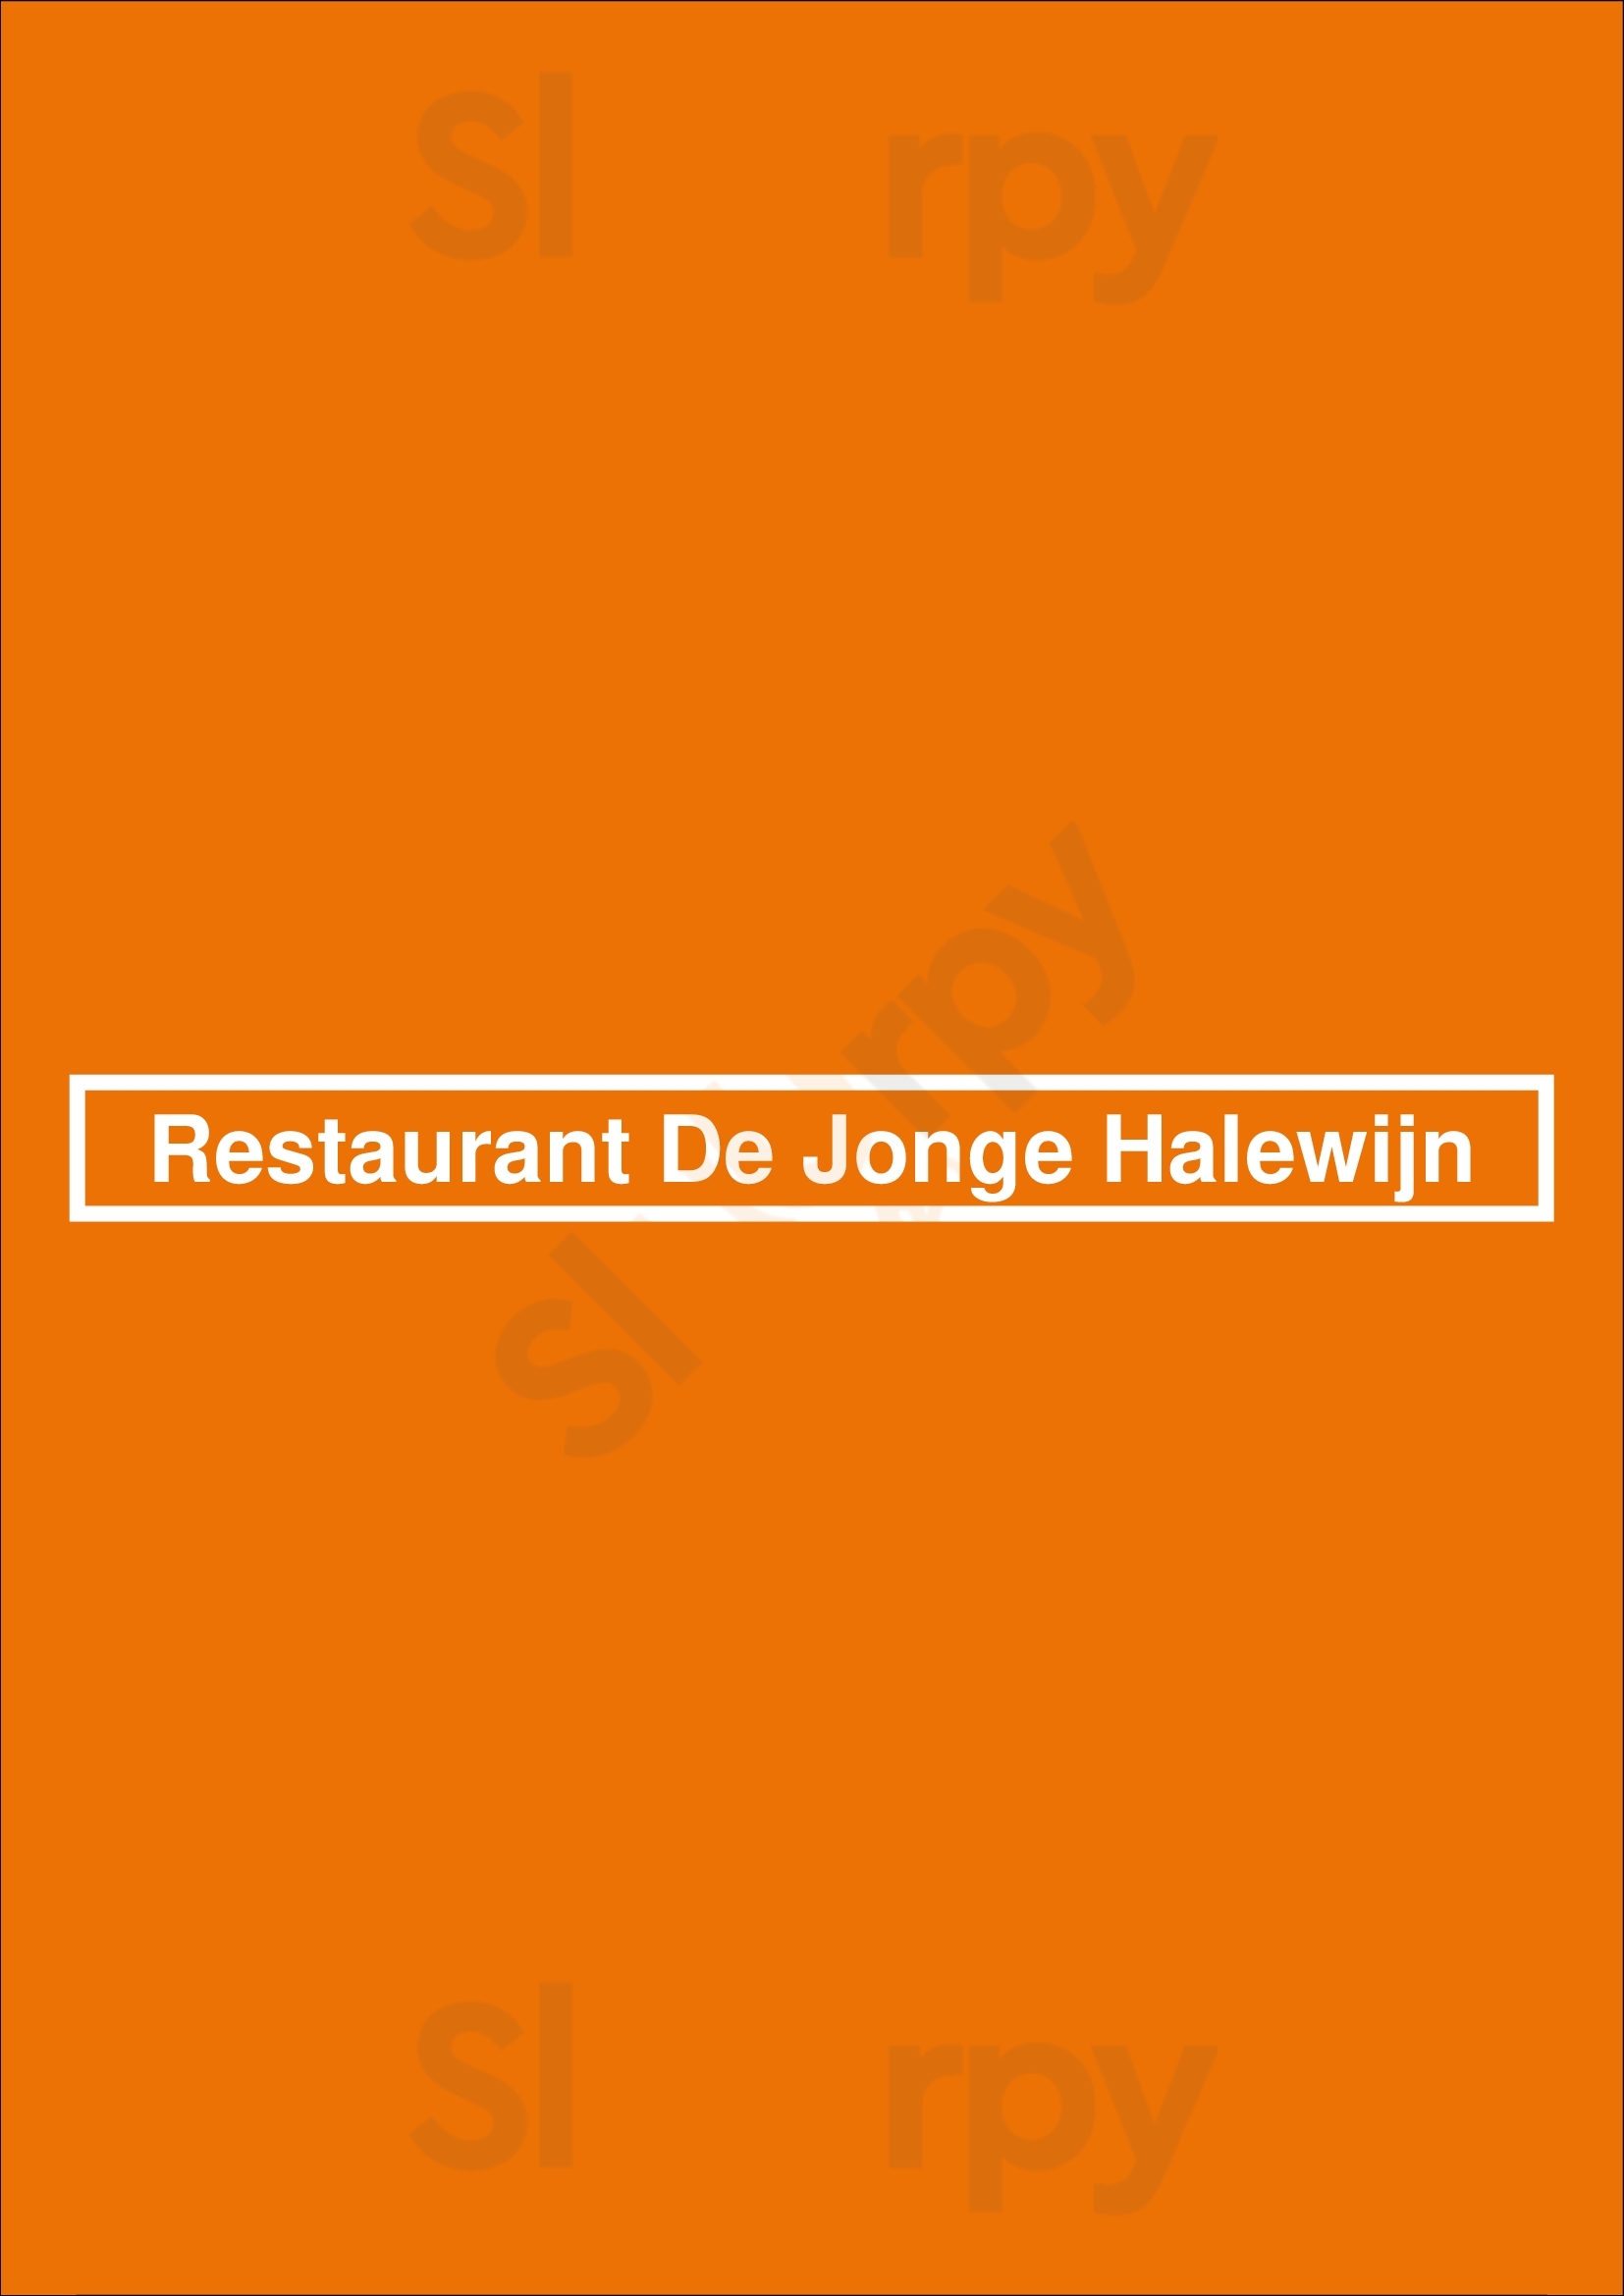 Restaurant De Jonge Halewijn Beverwijk Menu - 1